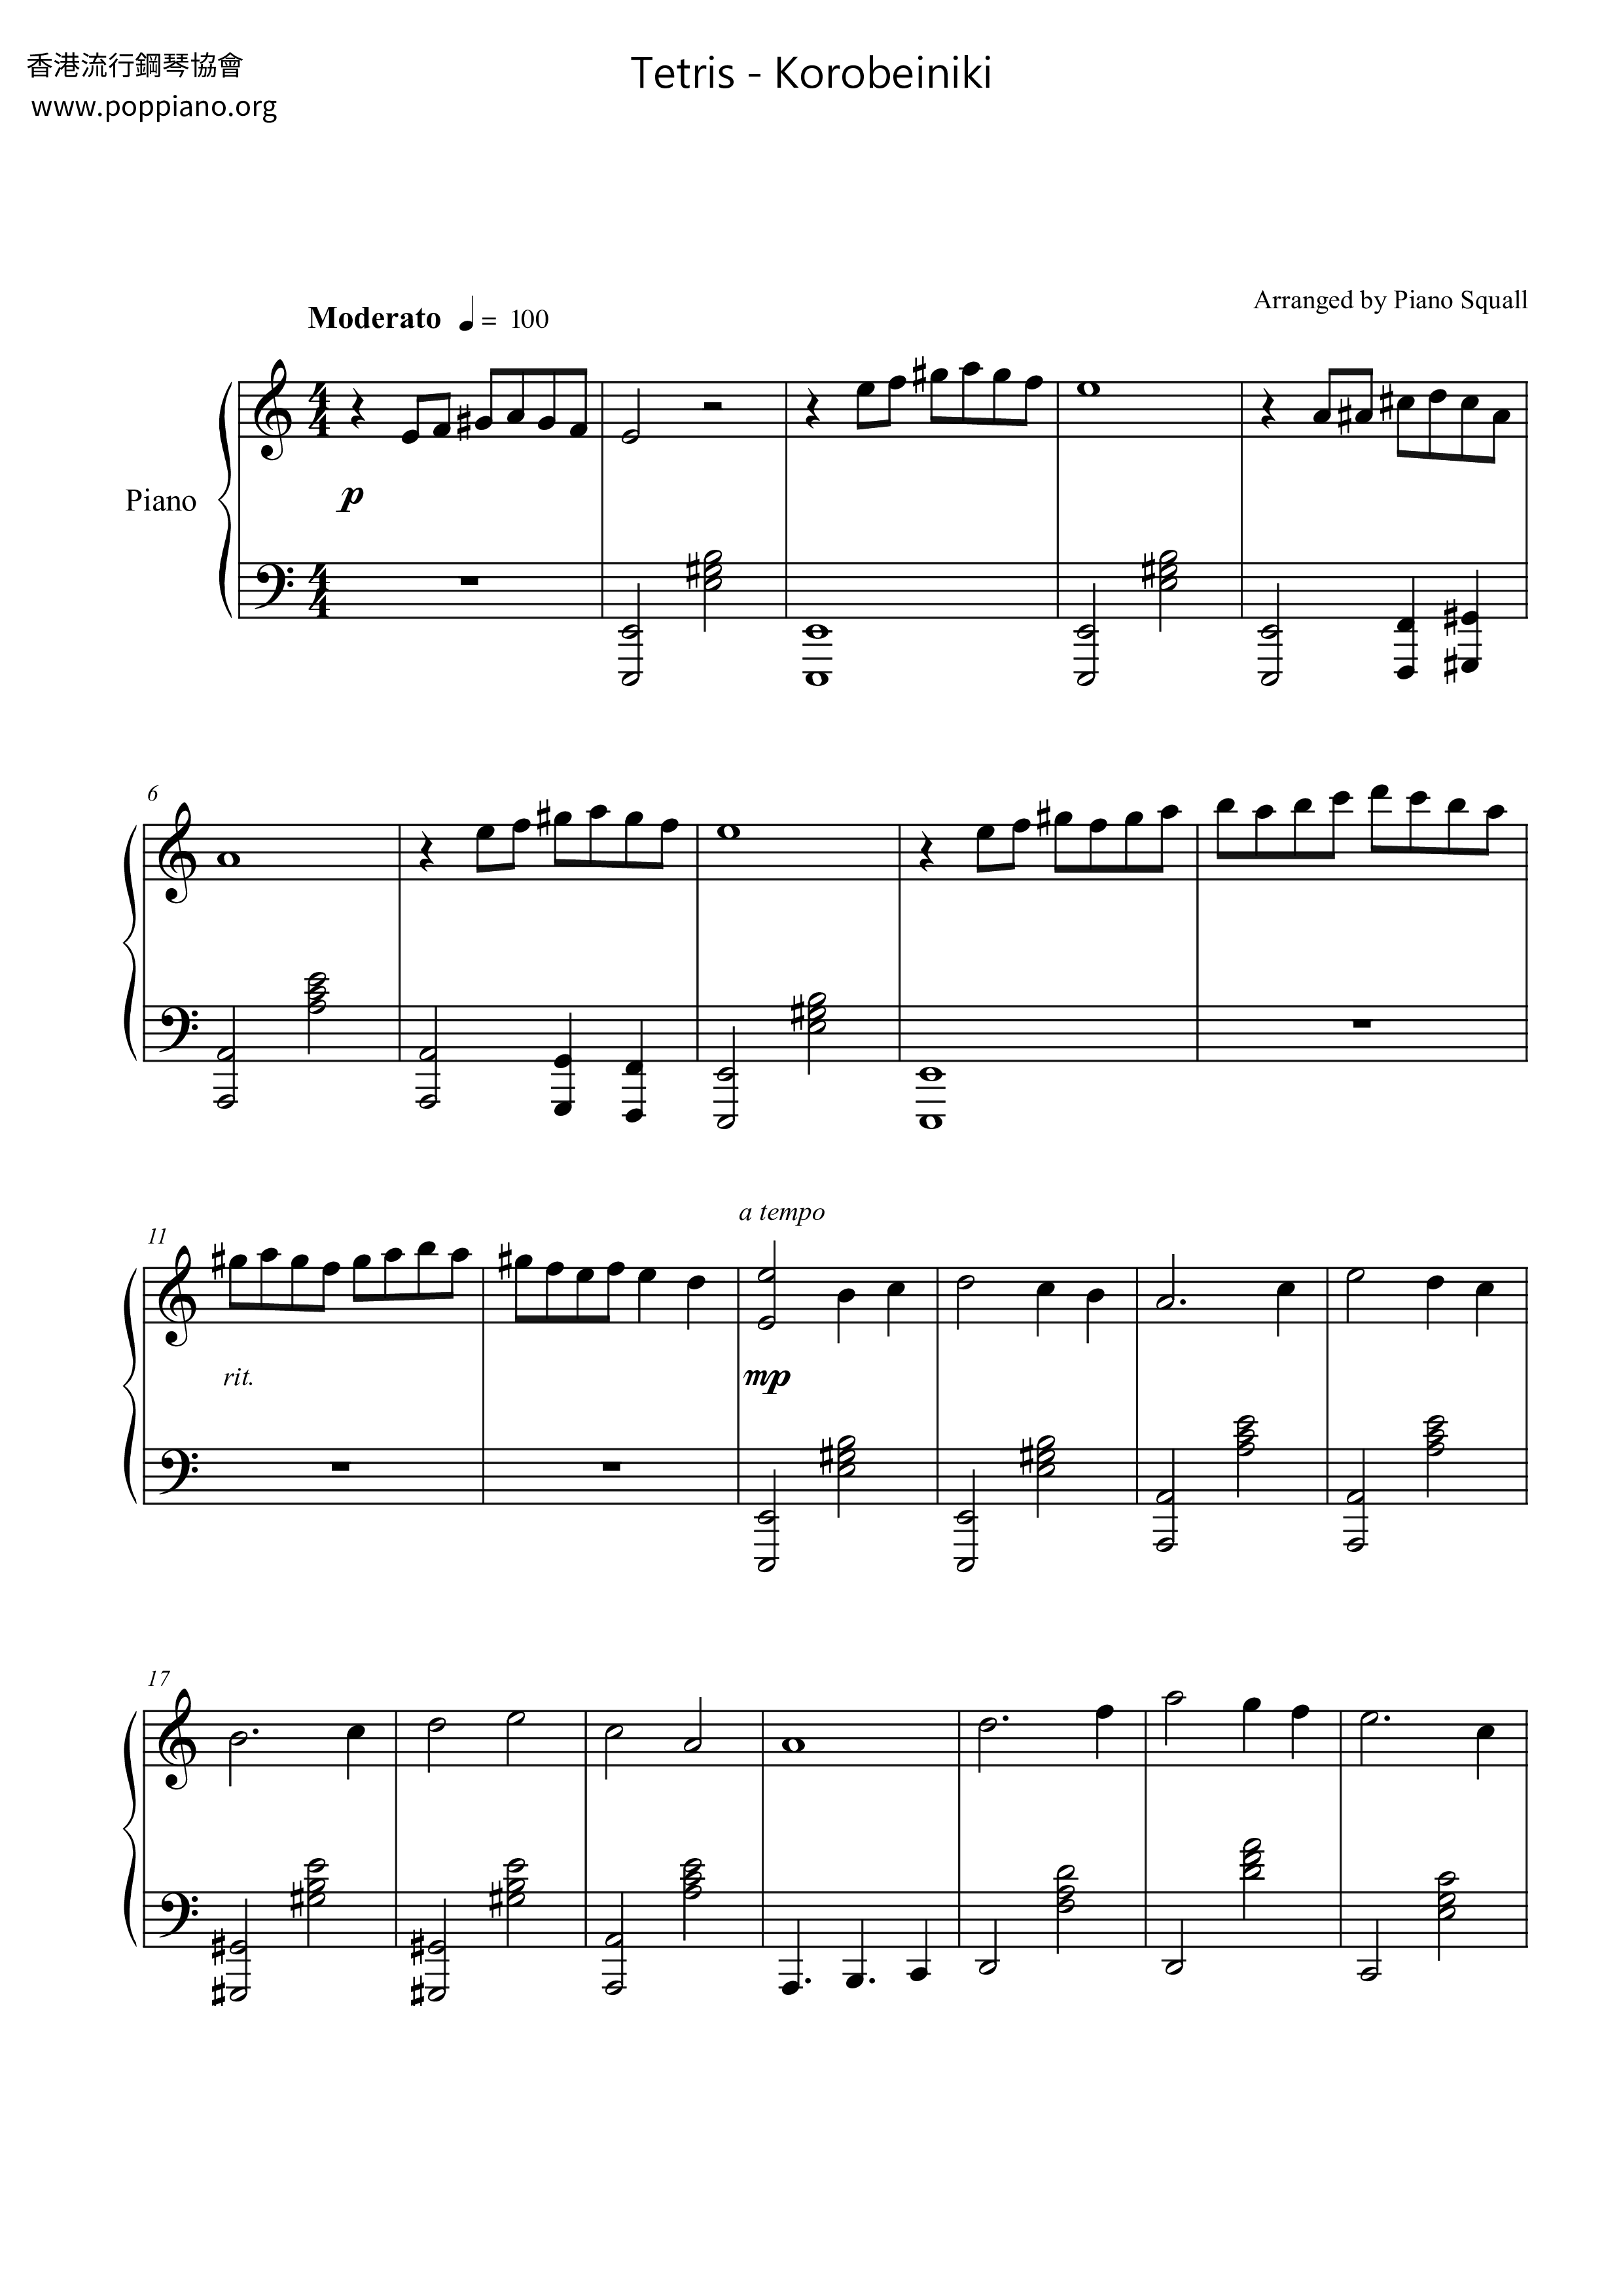 Tetris - Korobeinikiピアノ譜